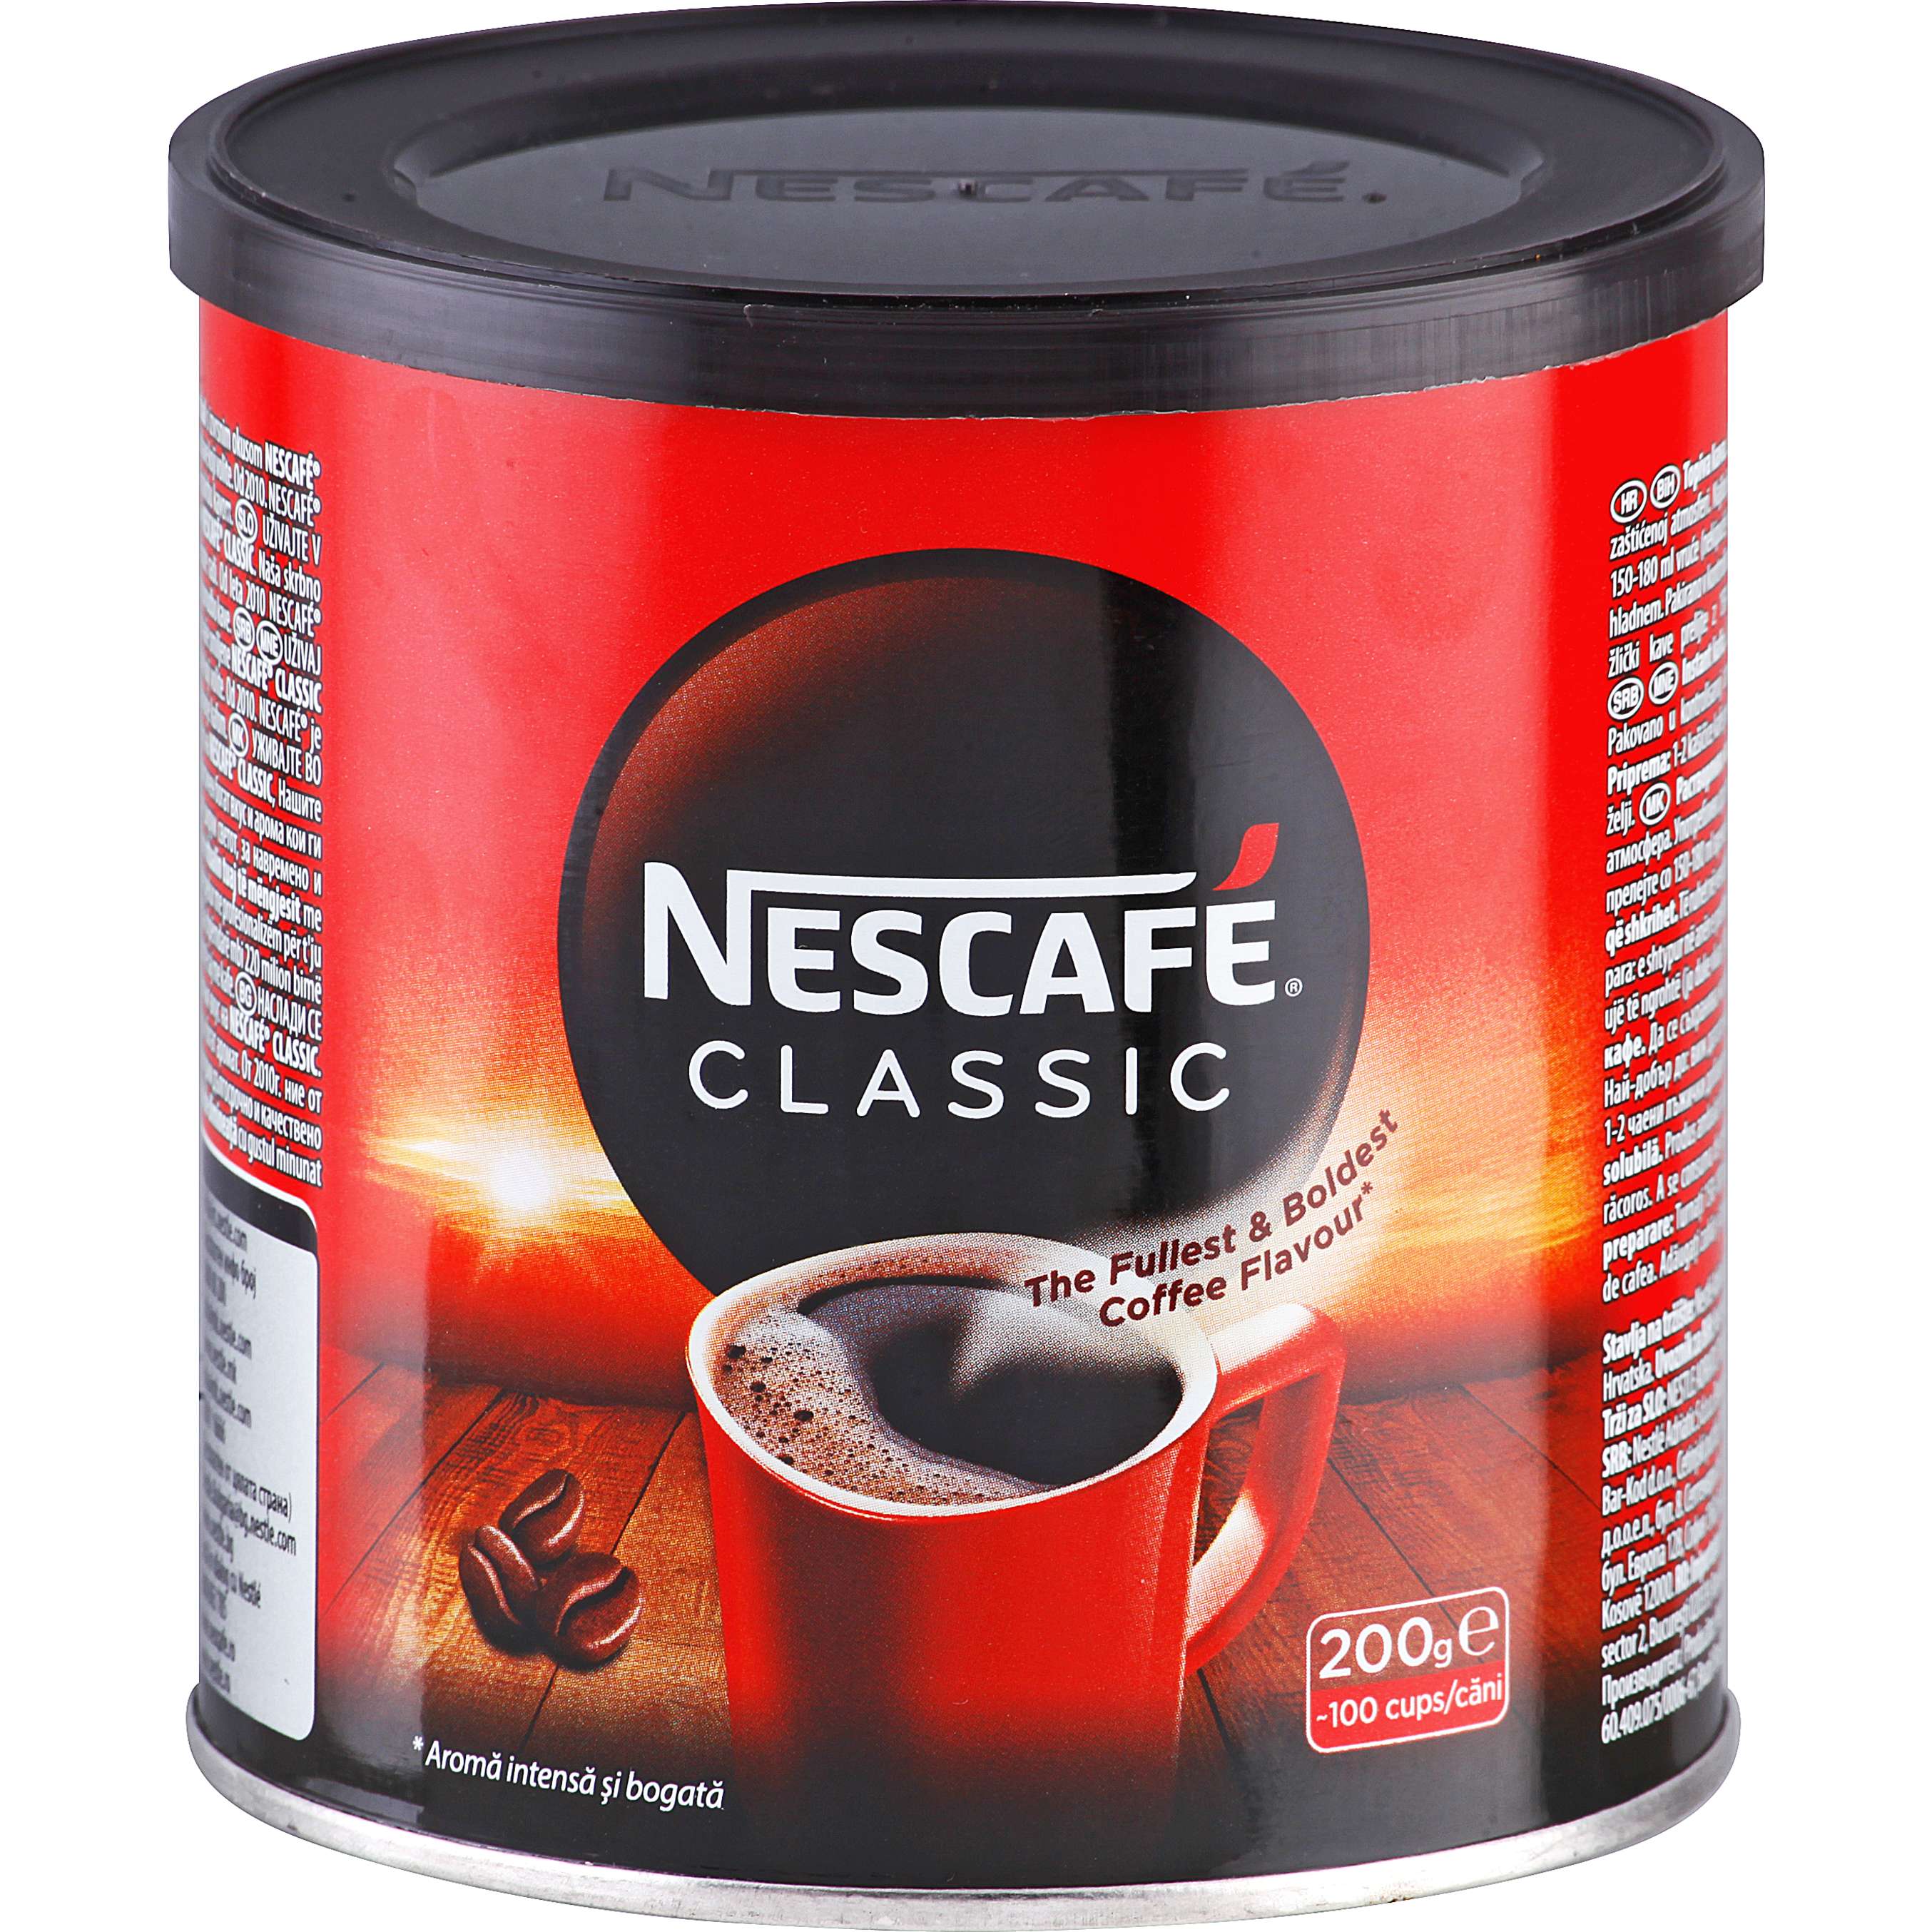 Fotografija ponude Nescafe Instant kava classic